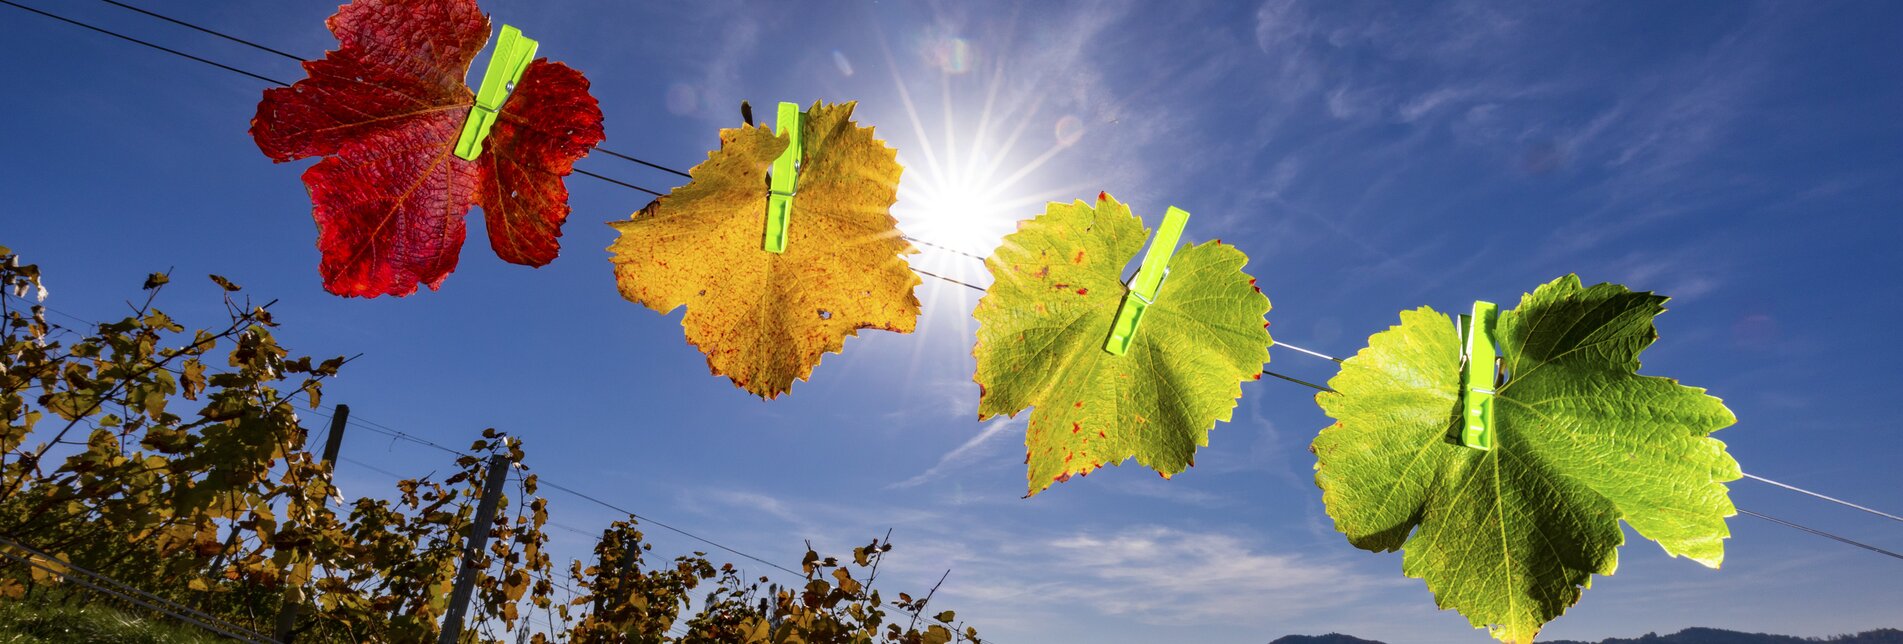 vineyard in autumn | © Steiermark Tourismus | Harry Schiffer